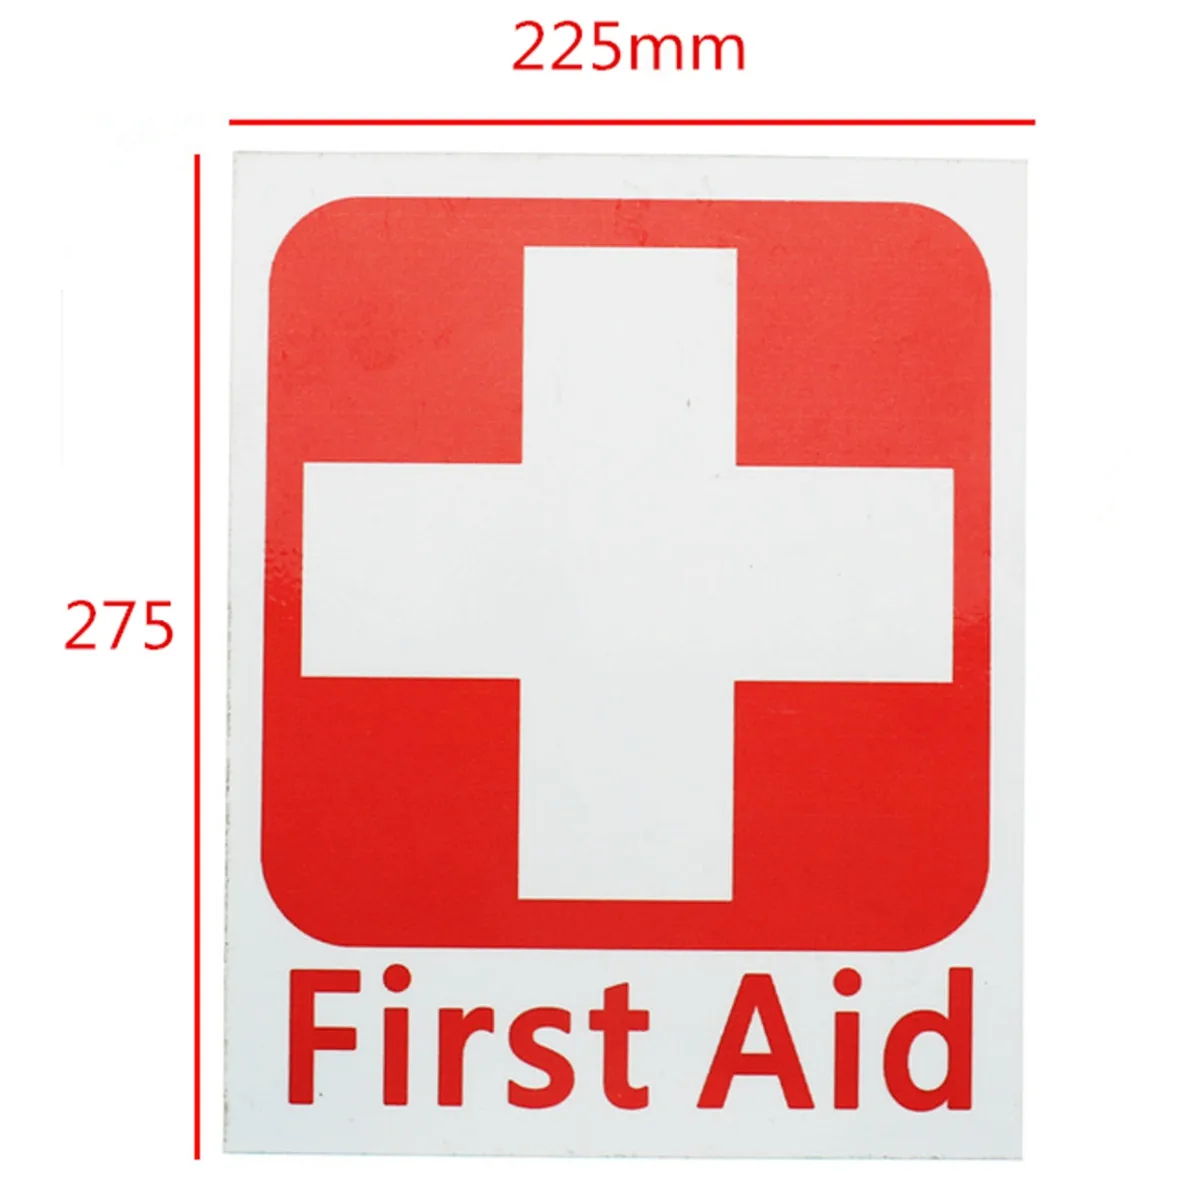 4 размера первой помощи виниловые самоклеящиеся этикетки водонепроницаемые знаки Красный Крест безопасность здоровья белый 50x63/100x125/150x175/225x275 мм - Название цвета: 225 x 275mm